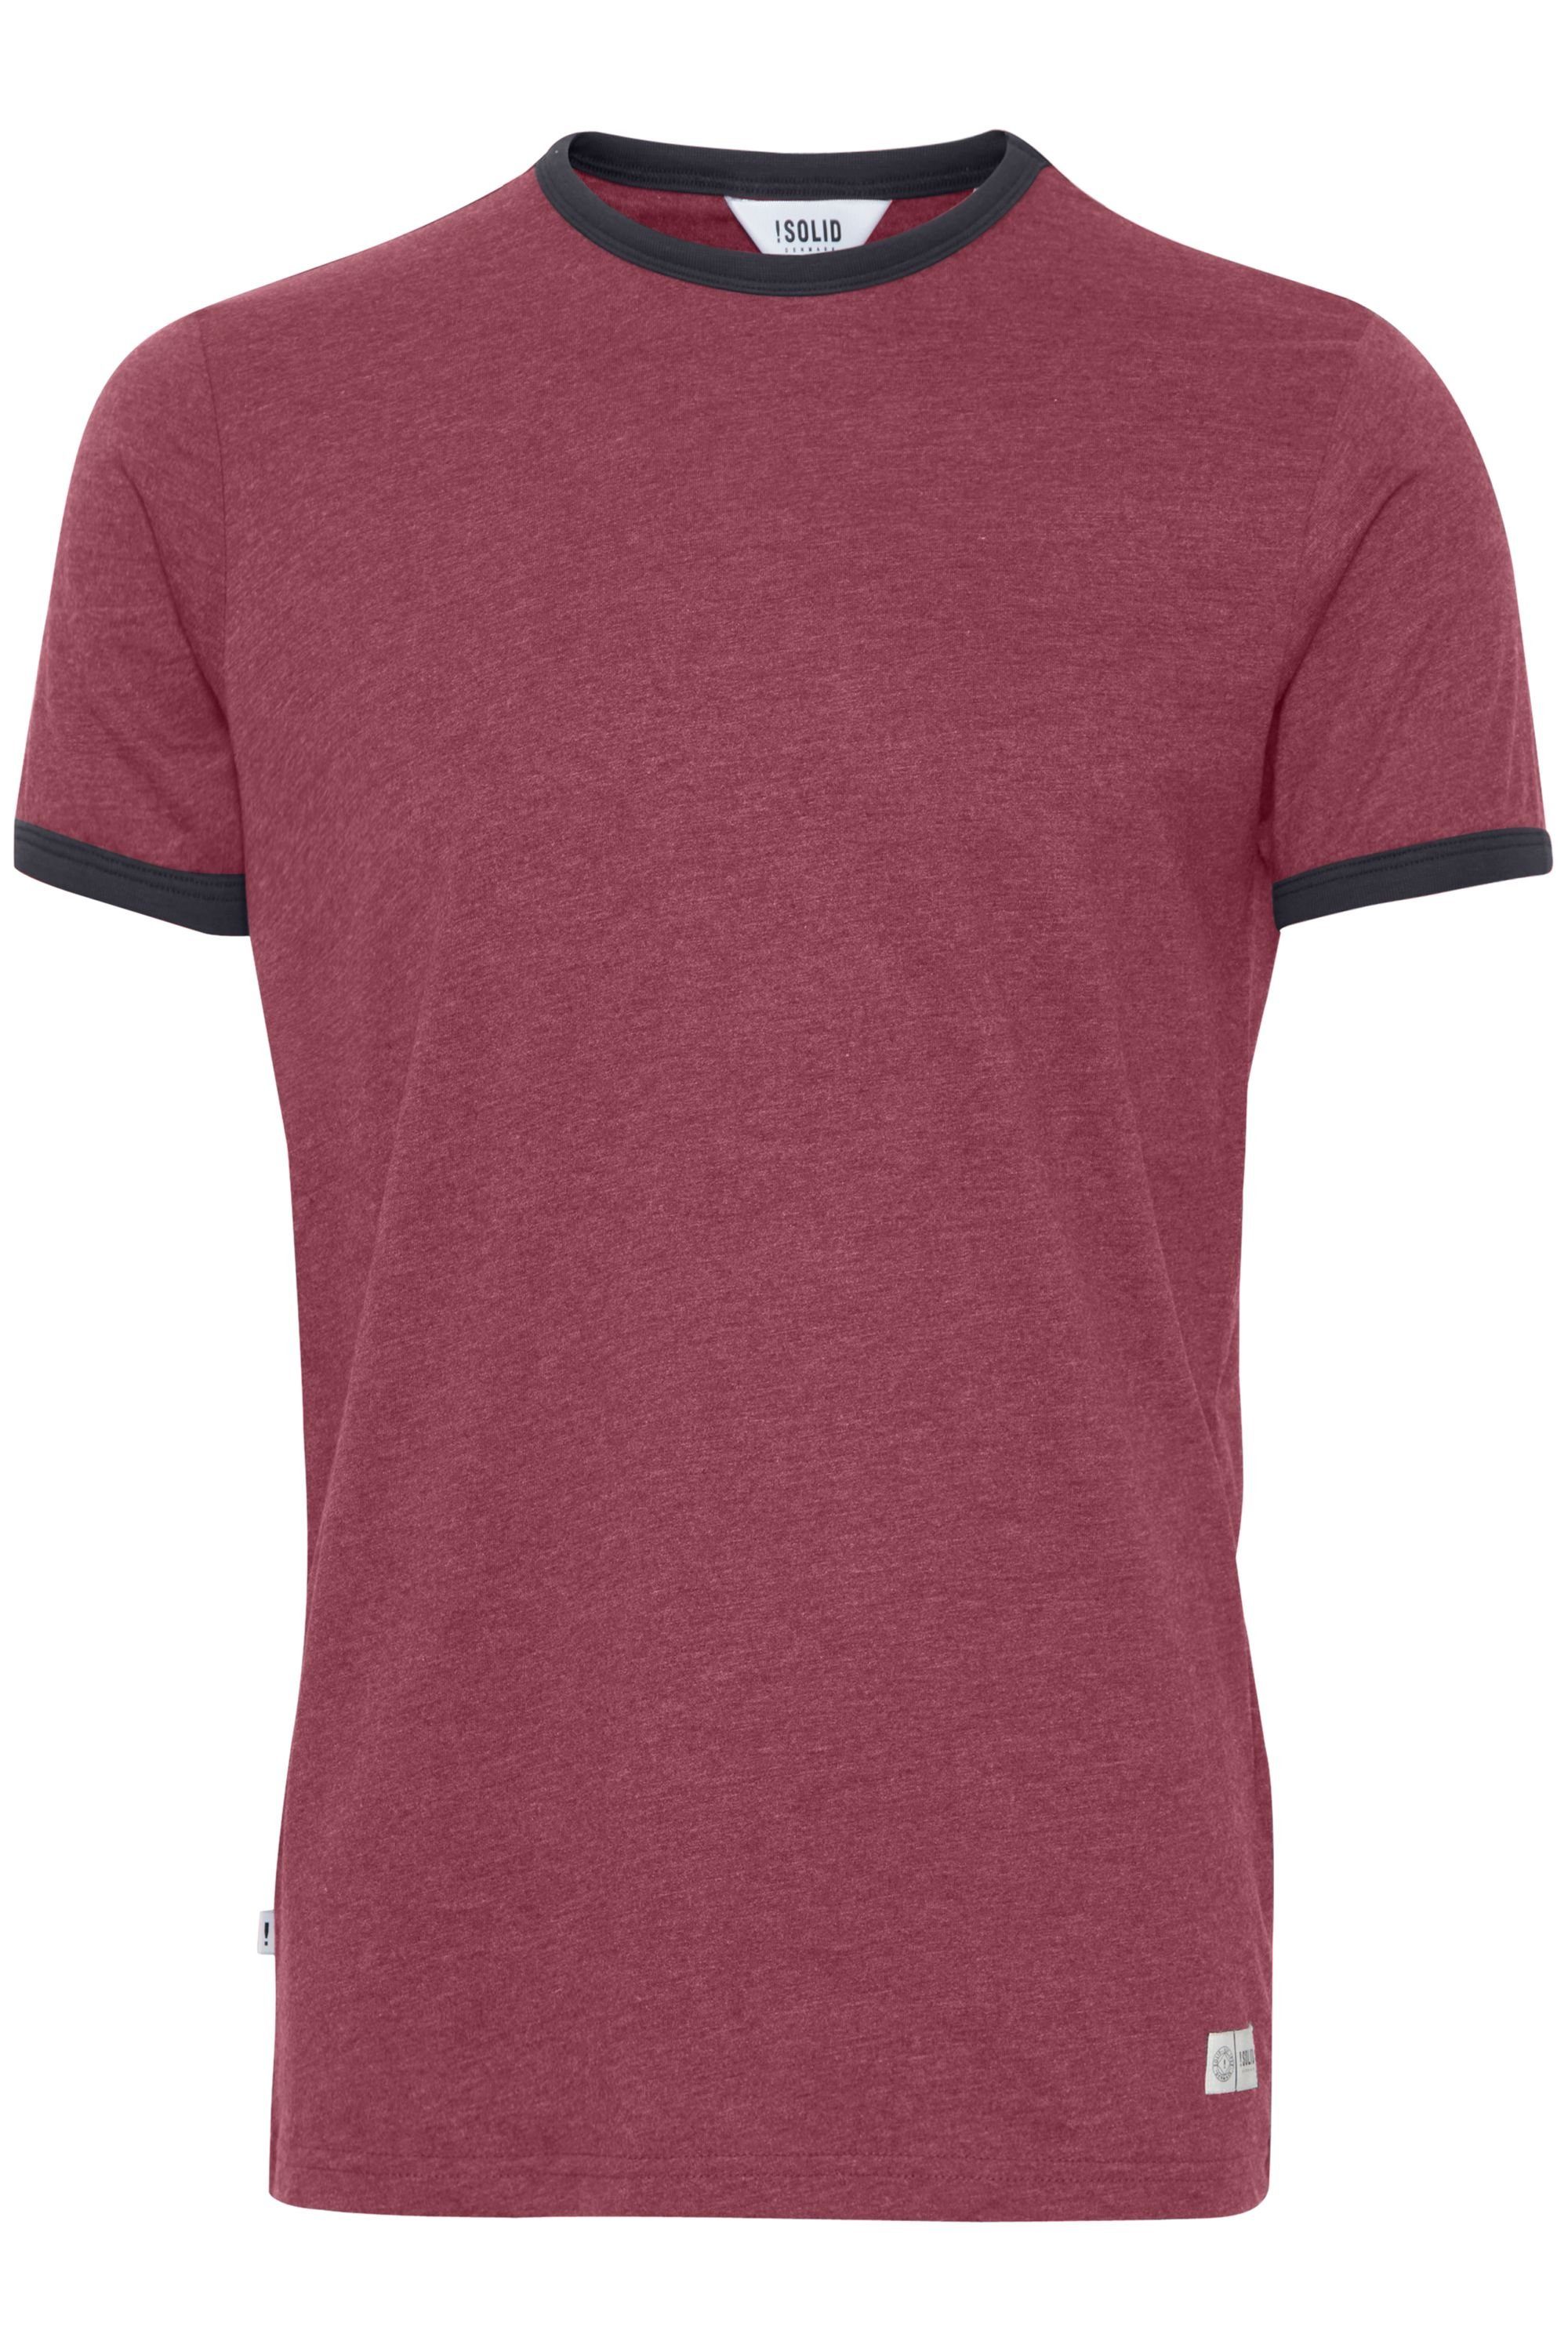 !Solid Rundhalsshirt SDManoldo T-Shirt mit farblich abgesetztem Kragen und Ärmelsaum Wine Red Melange (8985)